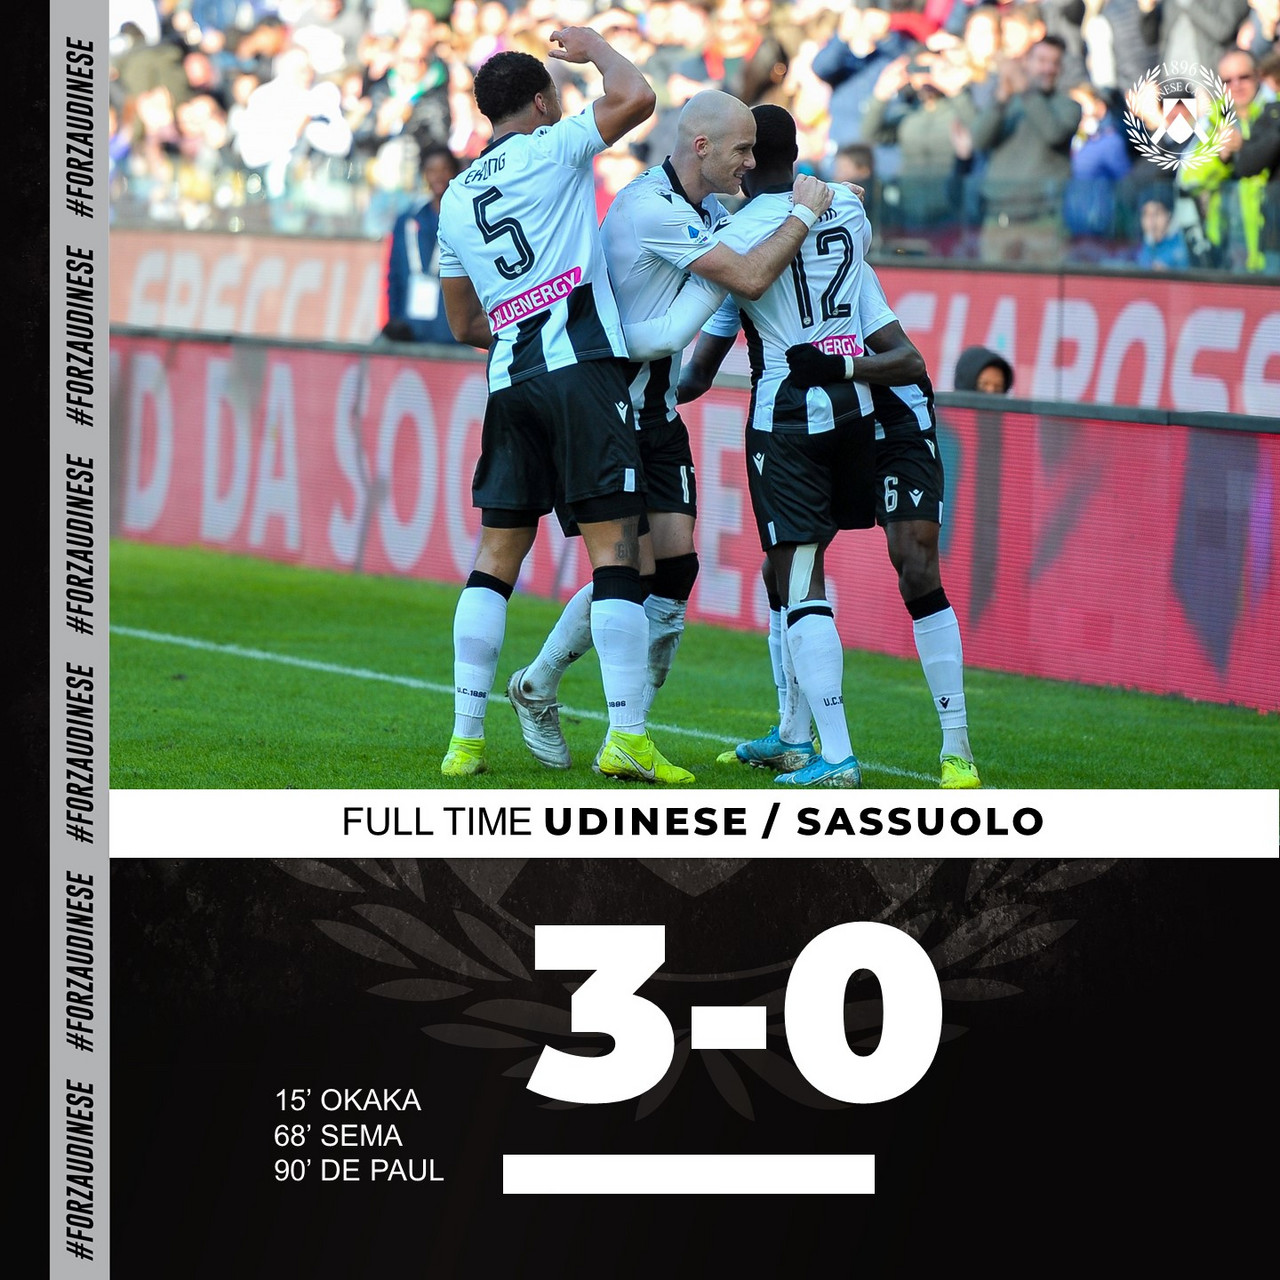 Show in Friuli: l'Udinese supera 3-0 un Sassuolo poco pungente